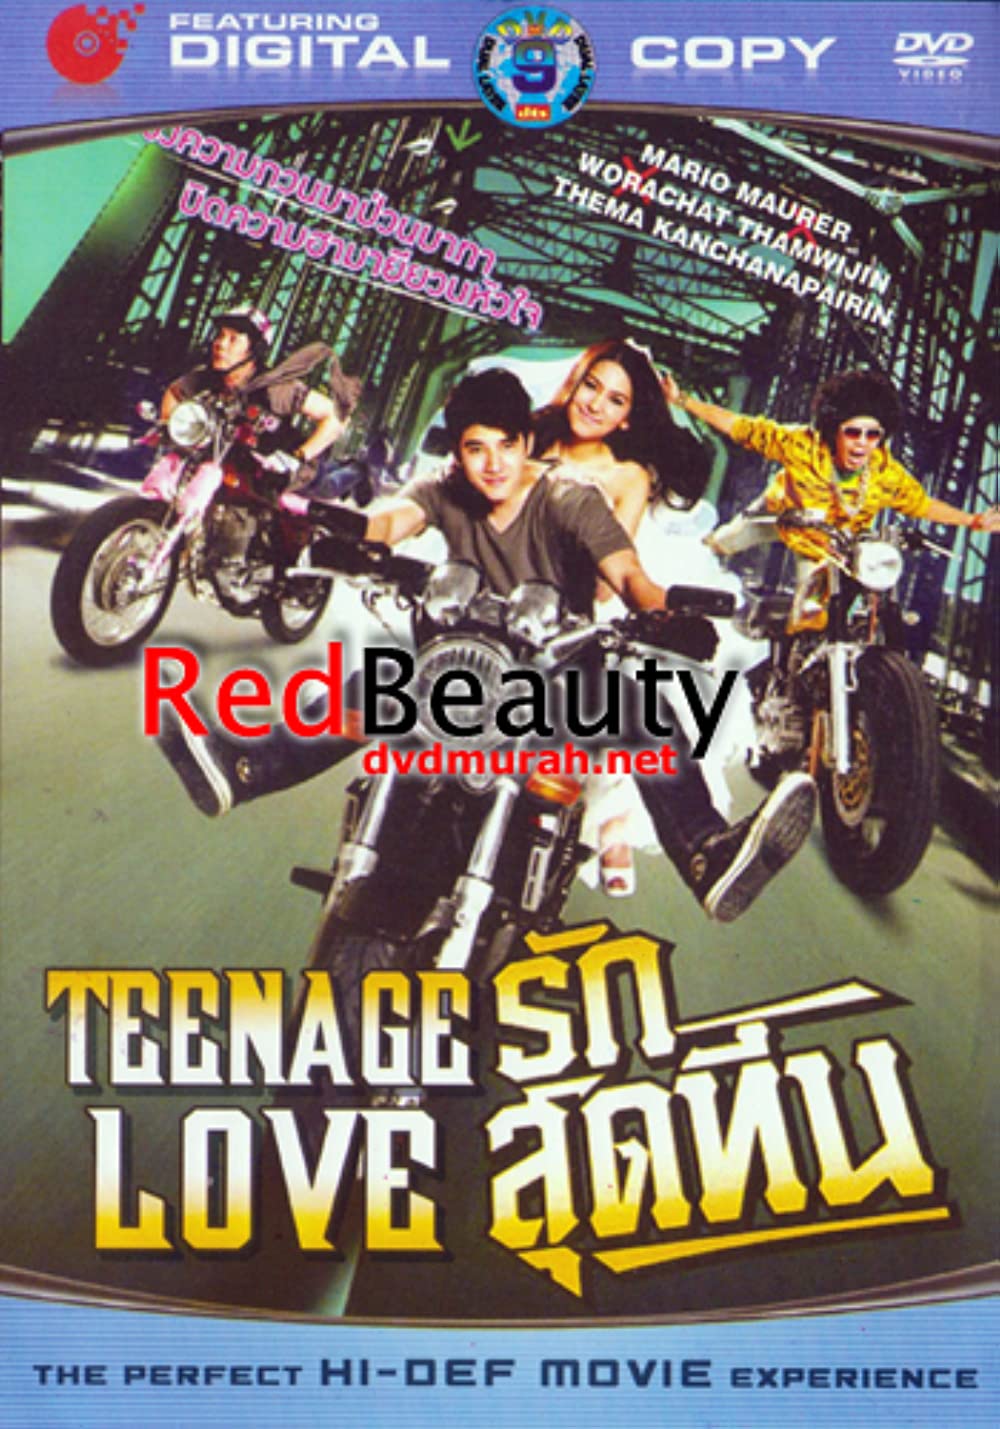 Rak Sud Teen (2012) รักสุดทีน พากย์ไทย